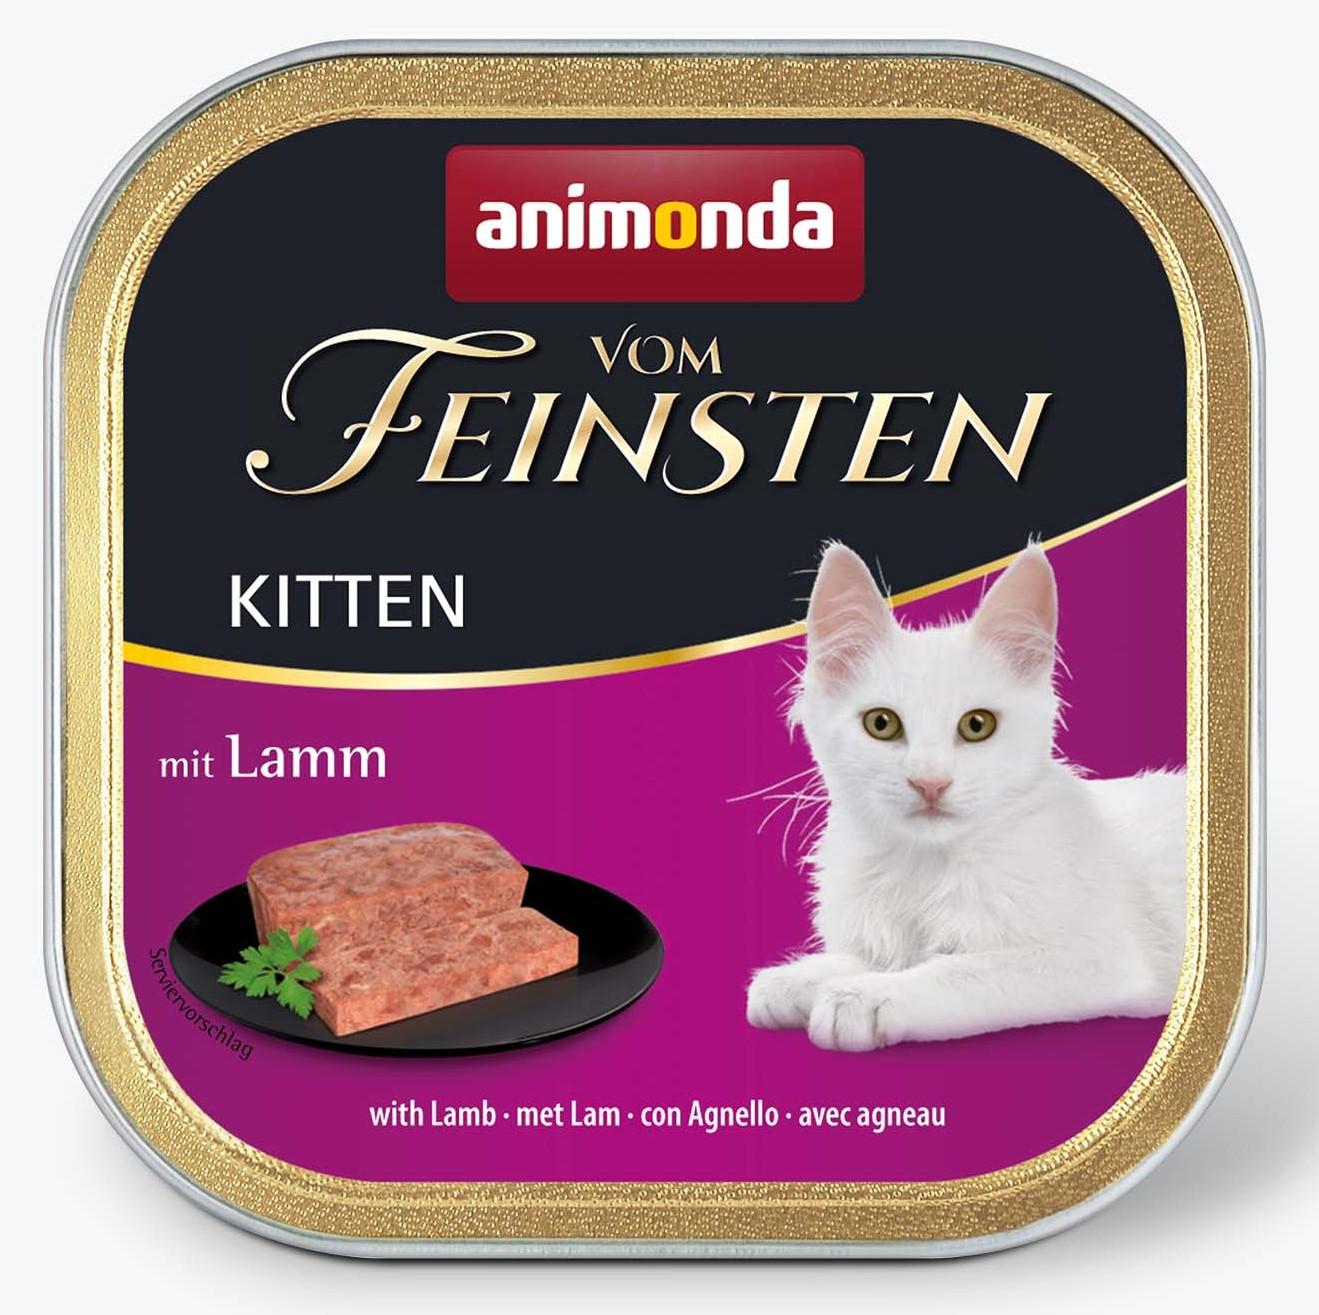 Animonda Vom Feinsten Kitten Lamb